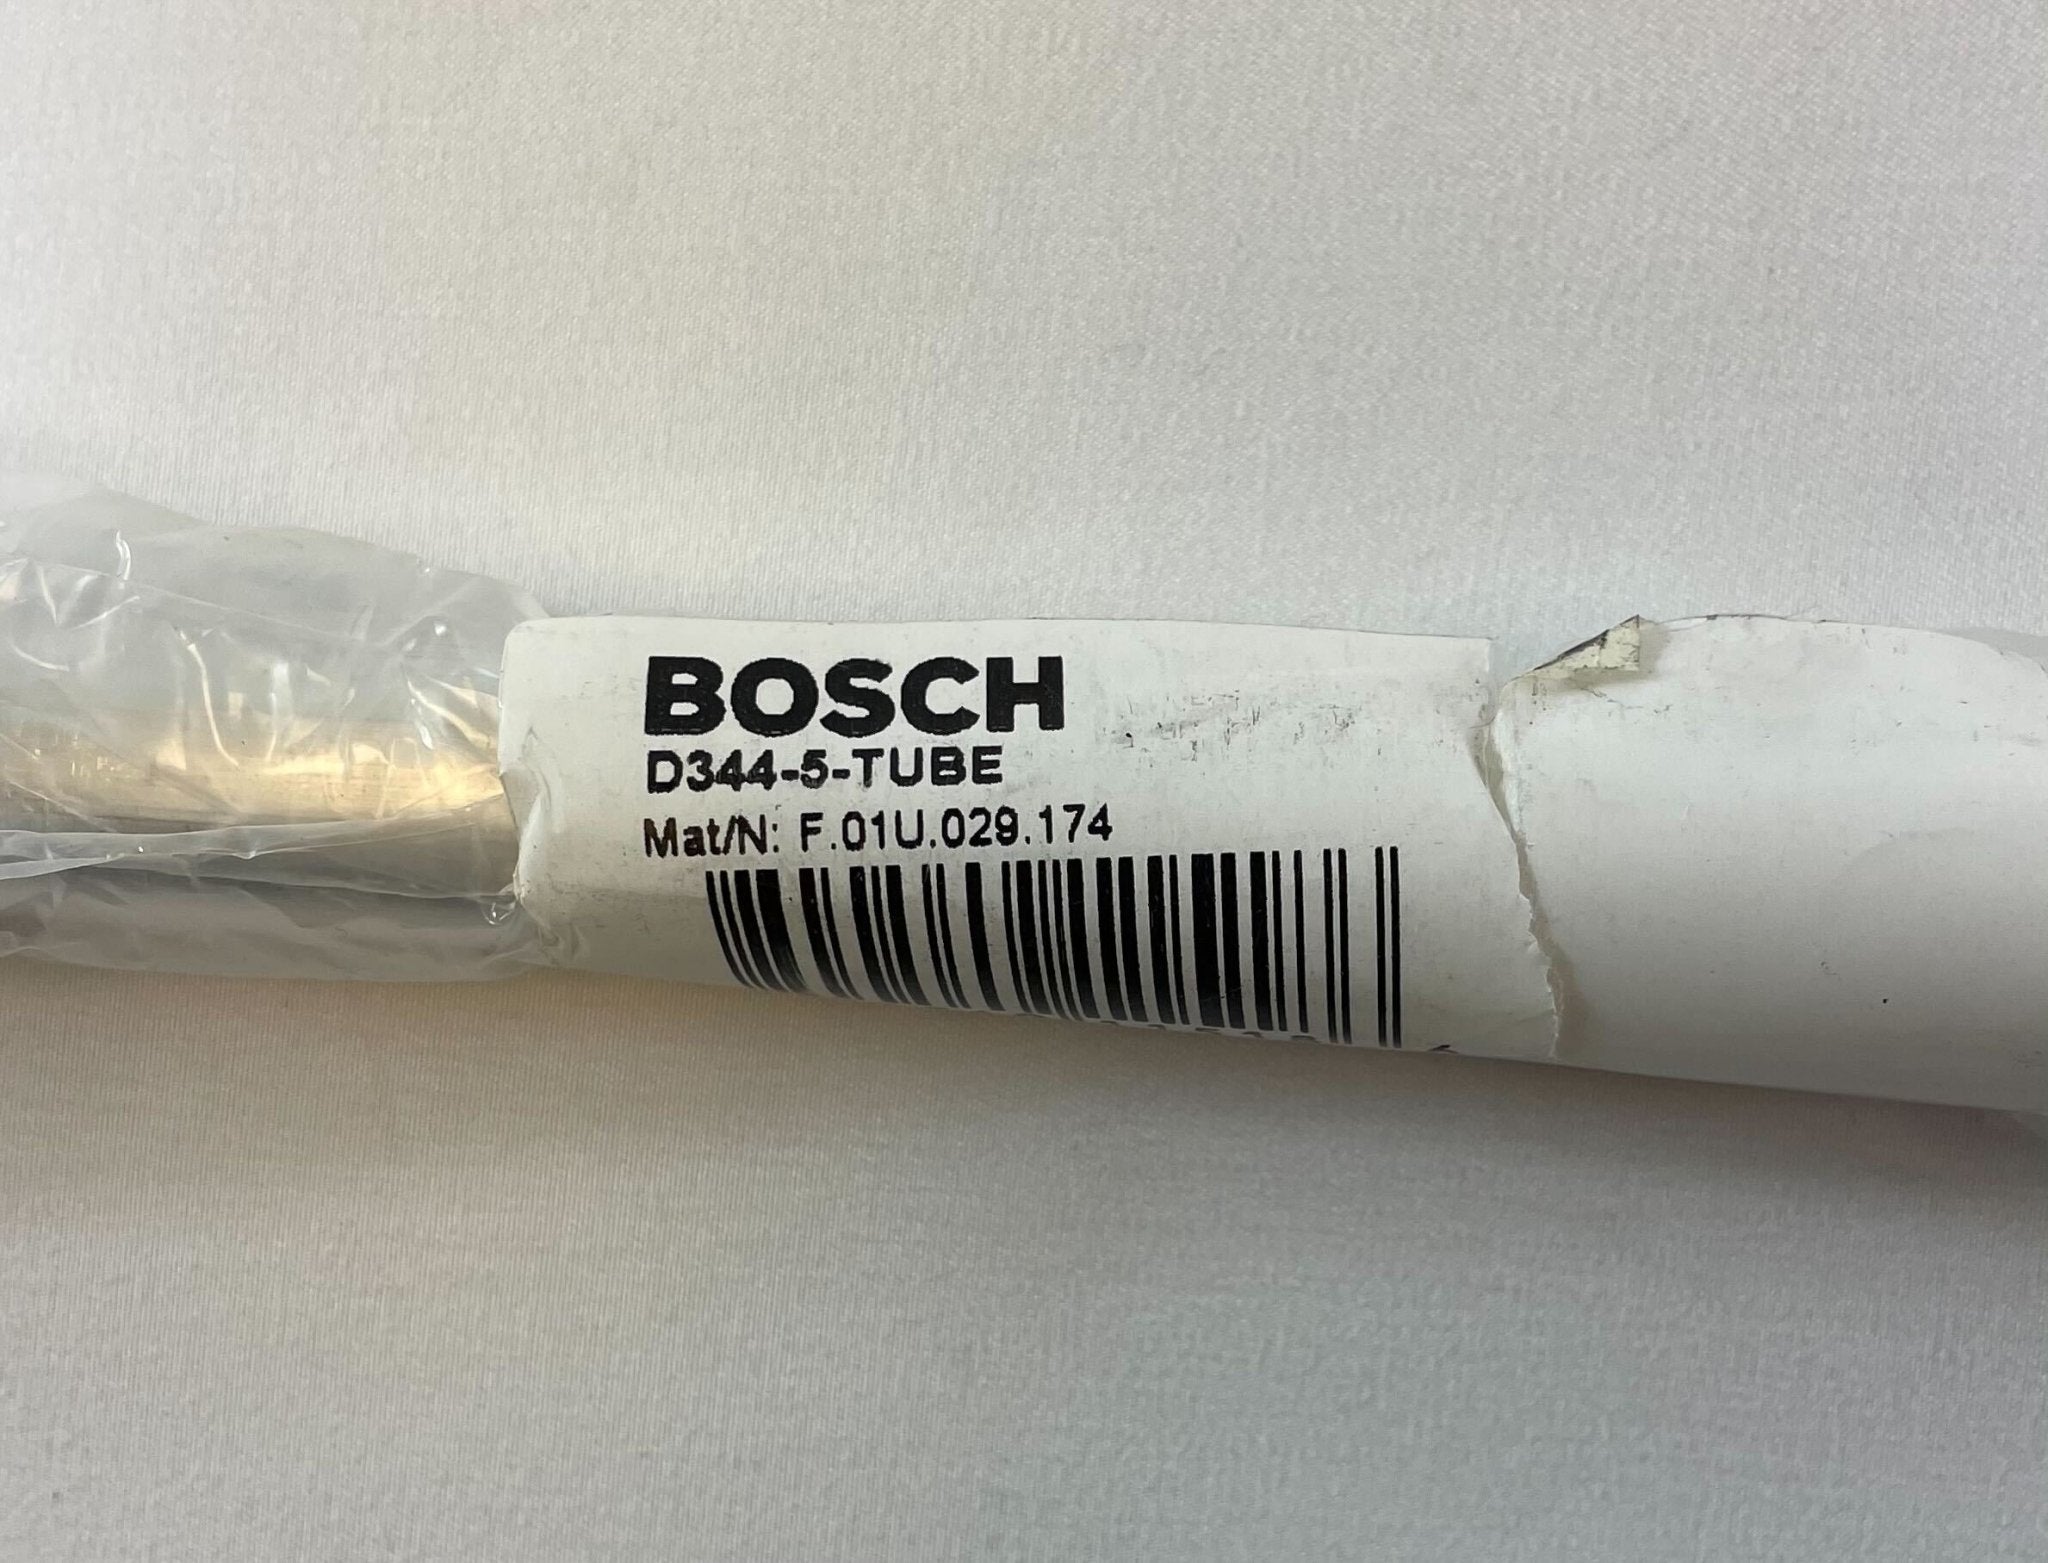 Bosch D344-5